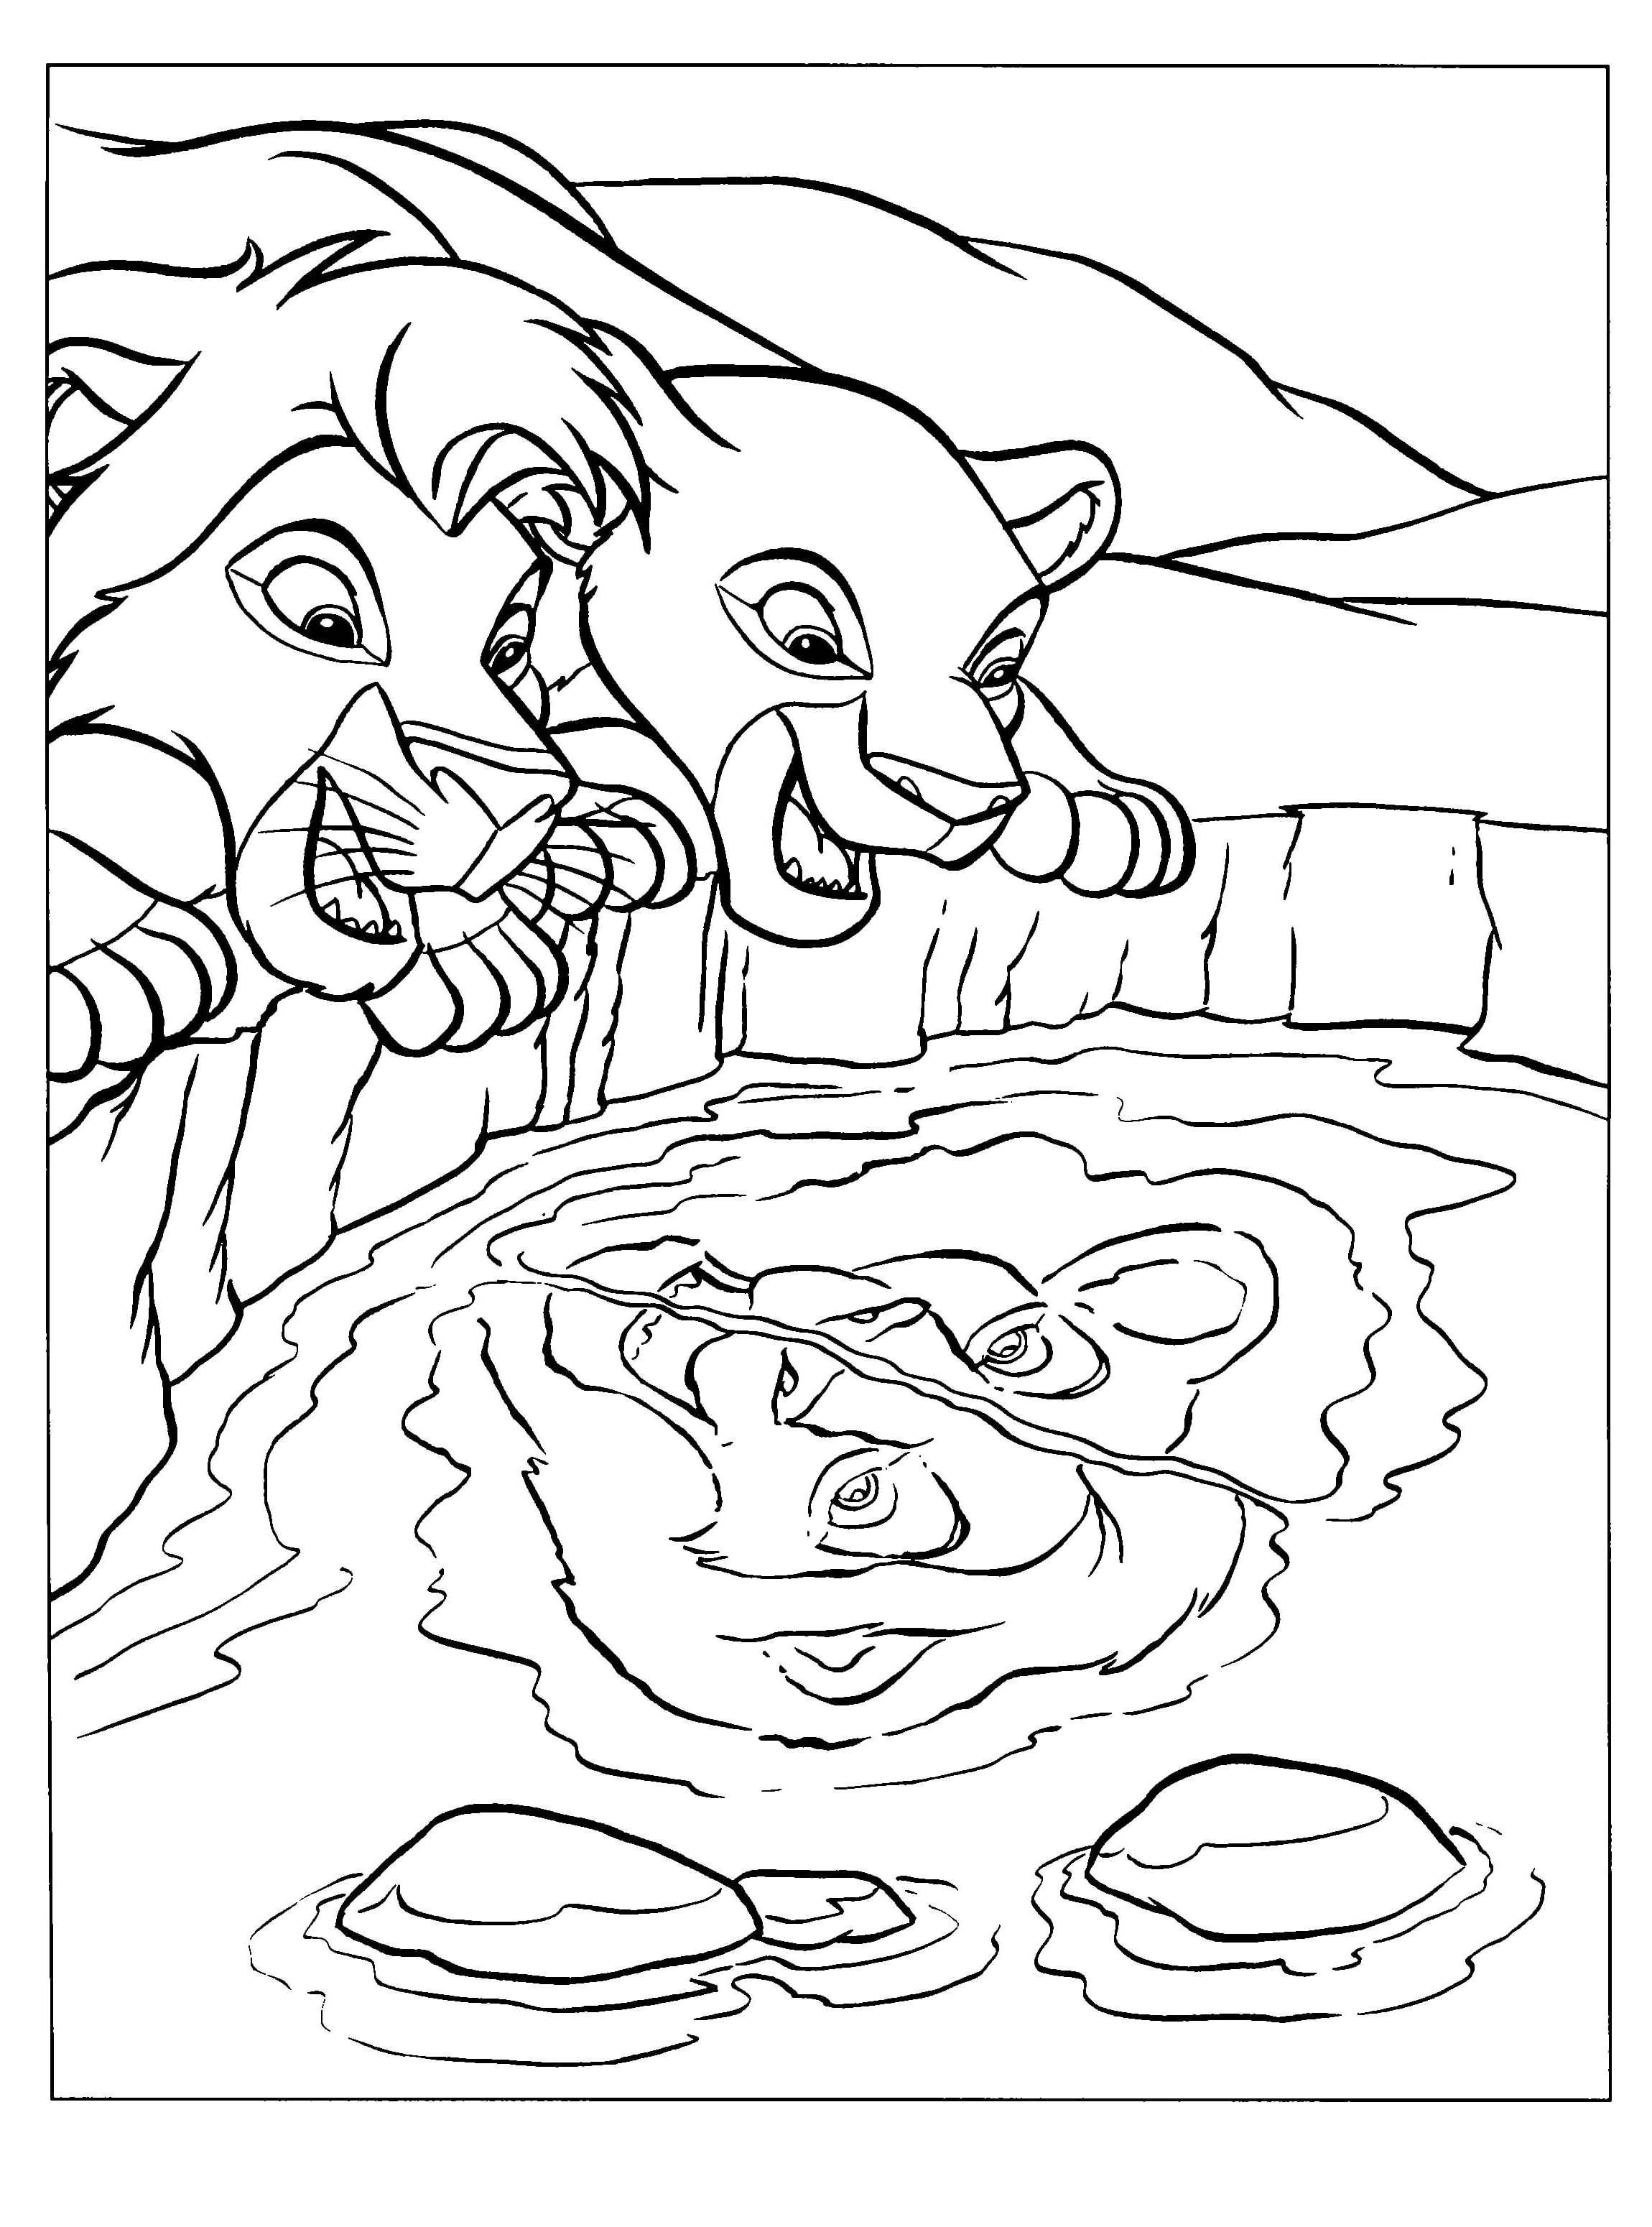 Раскраска Король Муфаса и львенок Симба | Раскраски из мультфильма Король лев (Lion King)